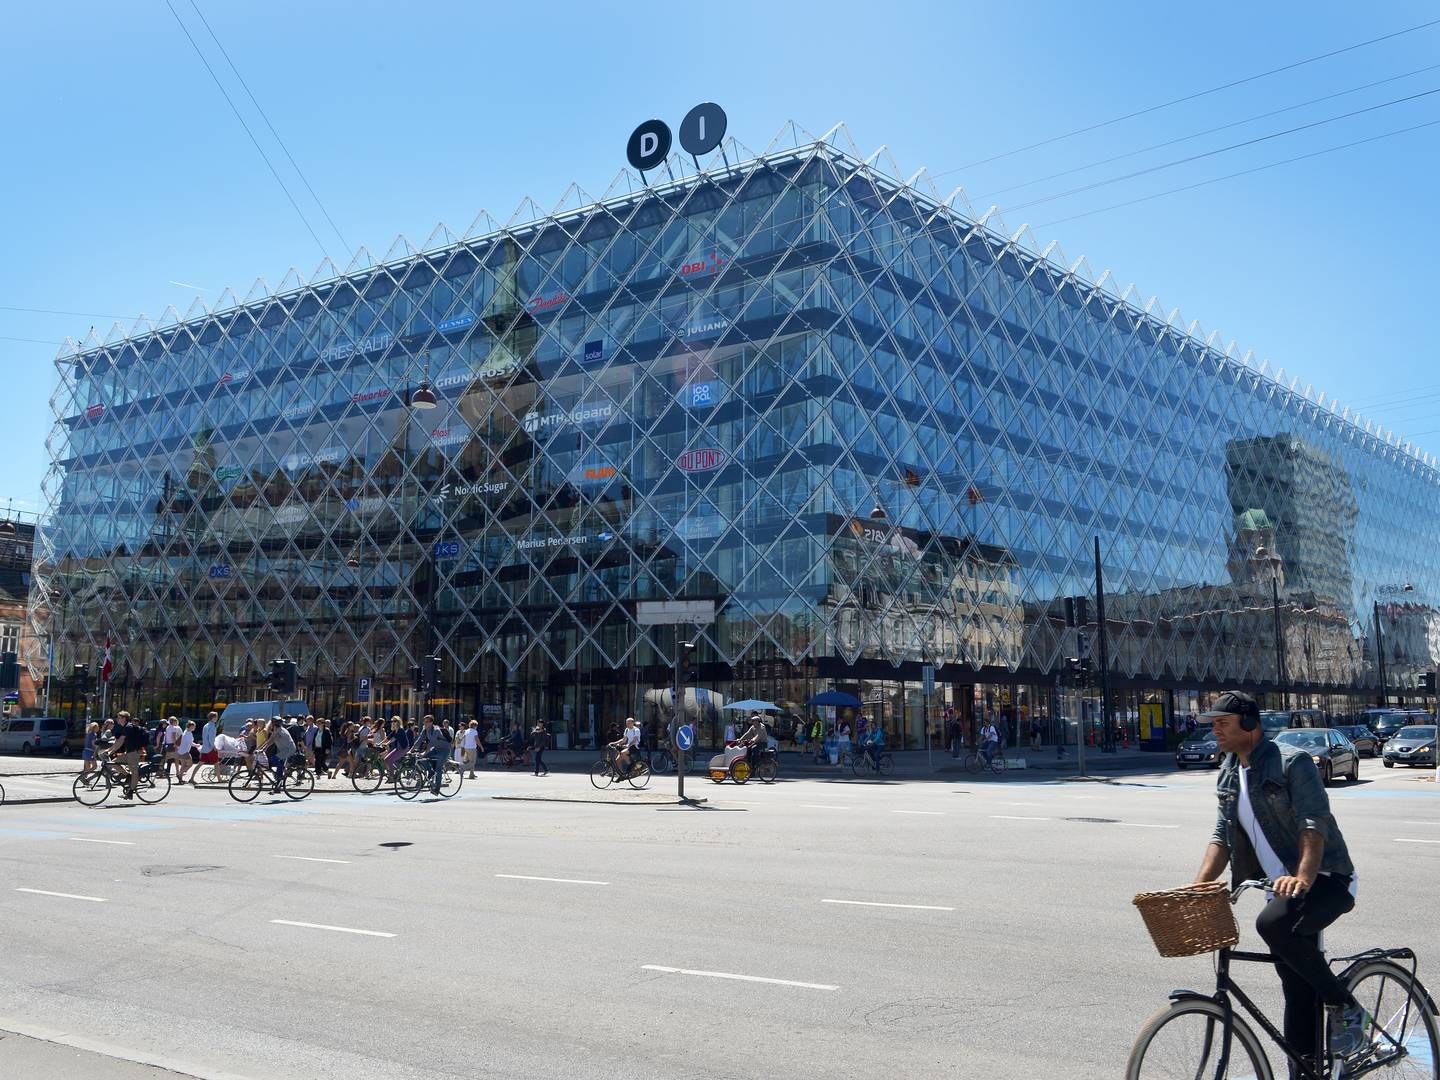 Erhvervsorganisationen Dansk Industris hovedsæde "Industriens Hus" på H.C. Andersens Boulevard i København. | Foto: Mik Eskestad